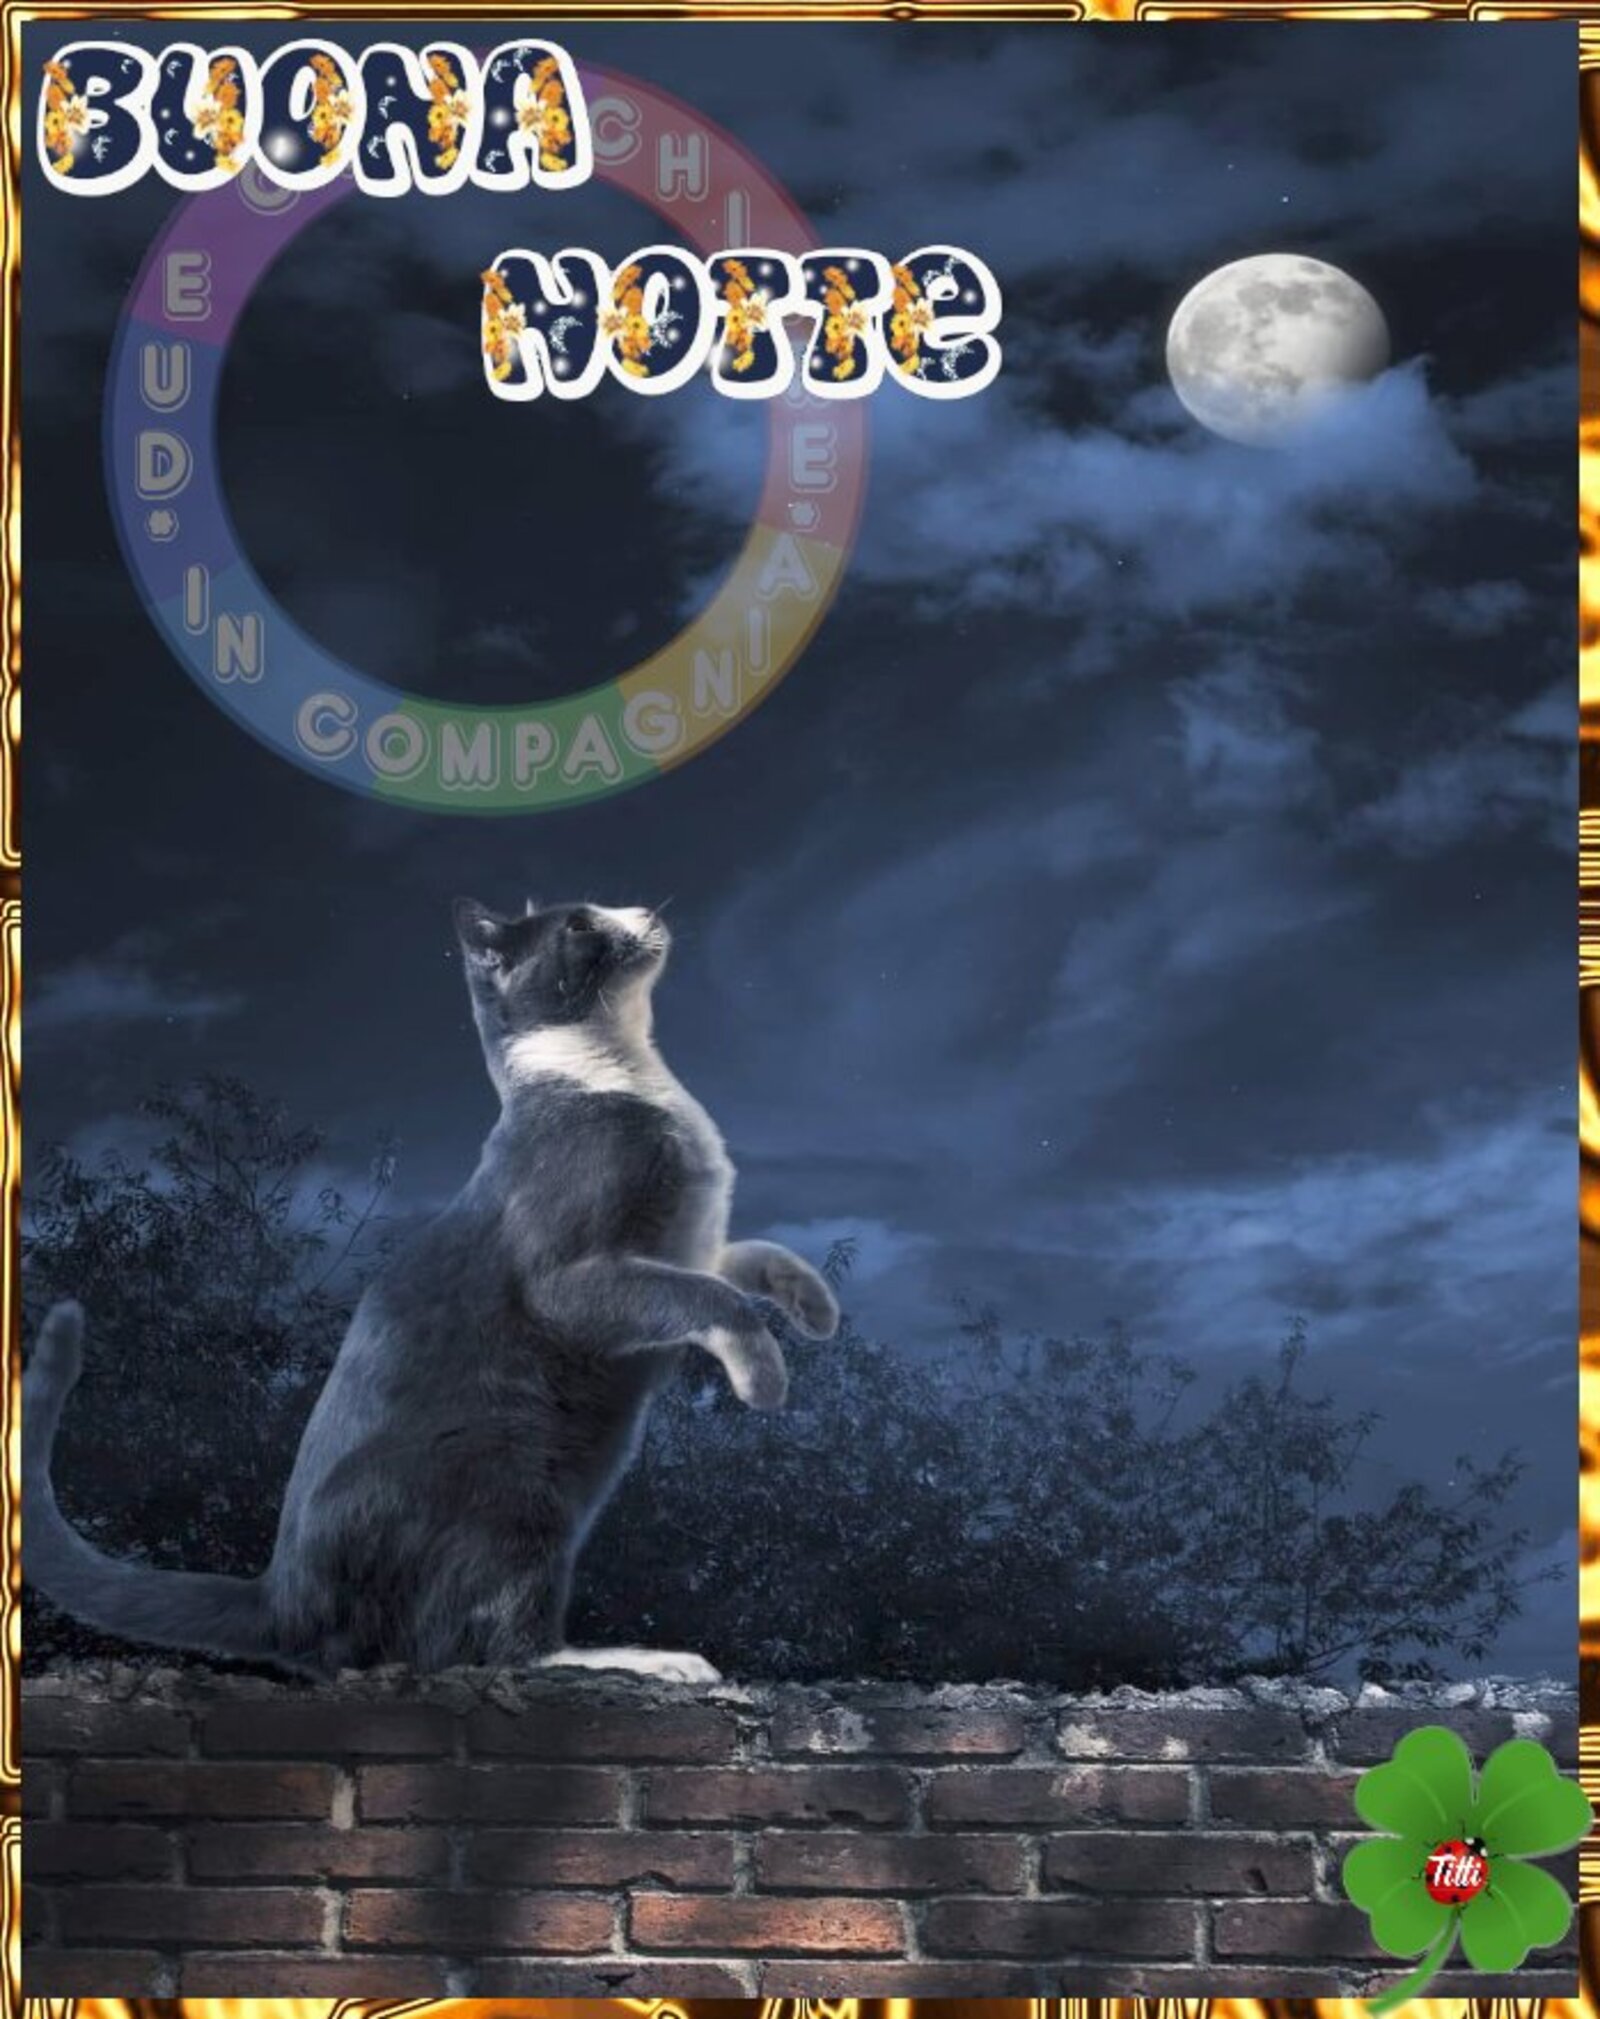 Buona Notte il gatto guarda la luna piena